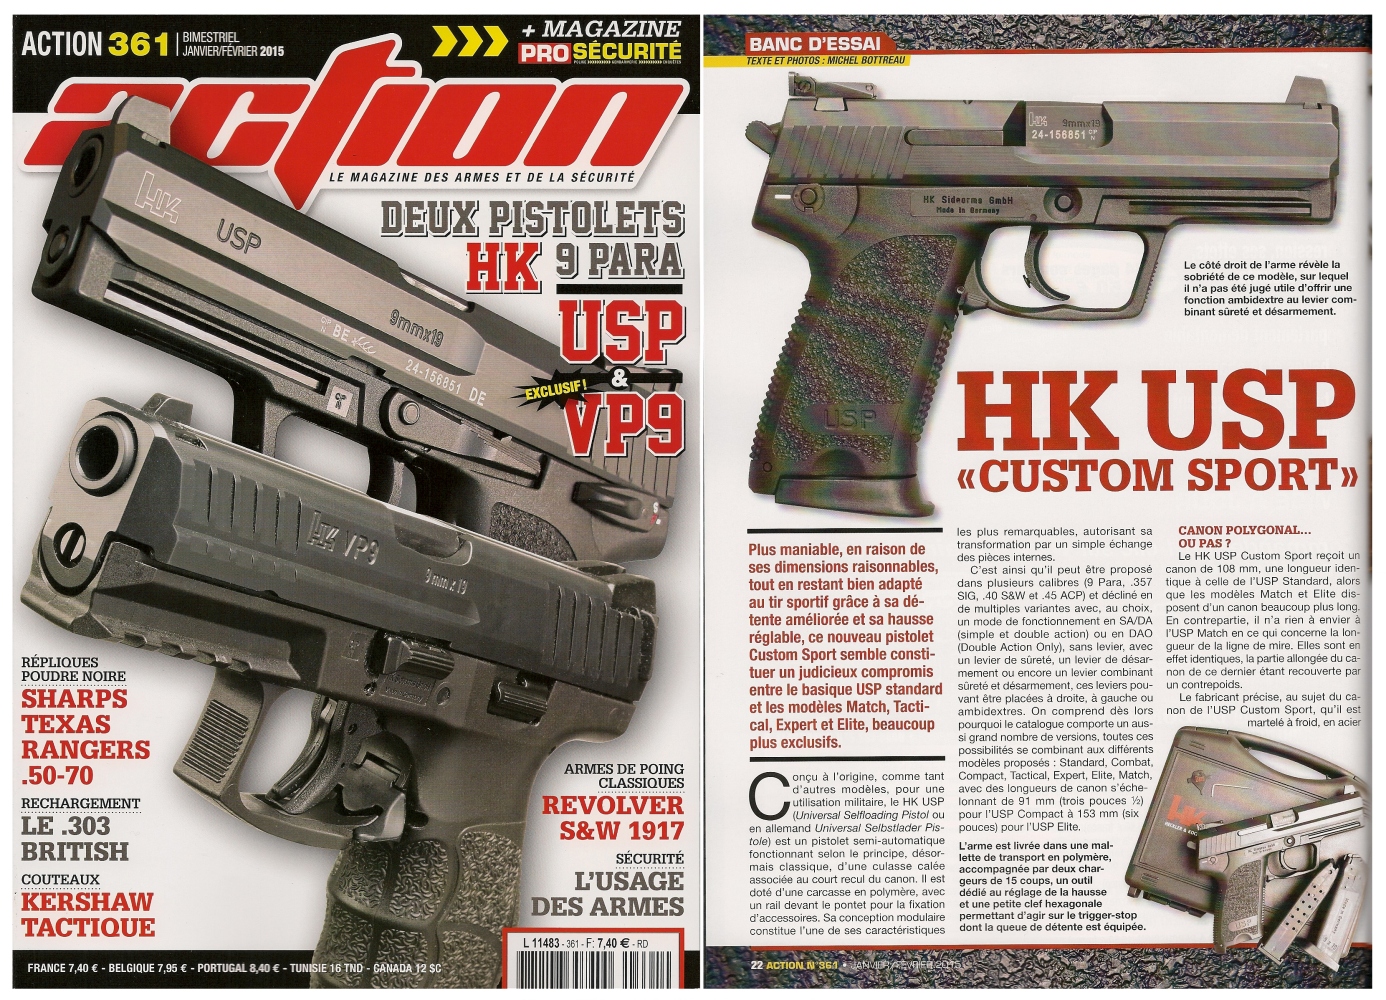 Le banc d'essai du pistolet HK USP Custom Sport a été publié sur 6 pages dans le magazine Action n° 361 (janvier-février 2015).